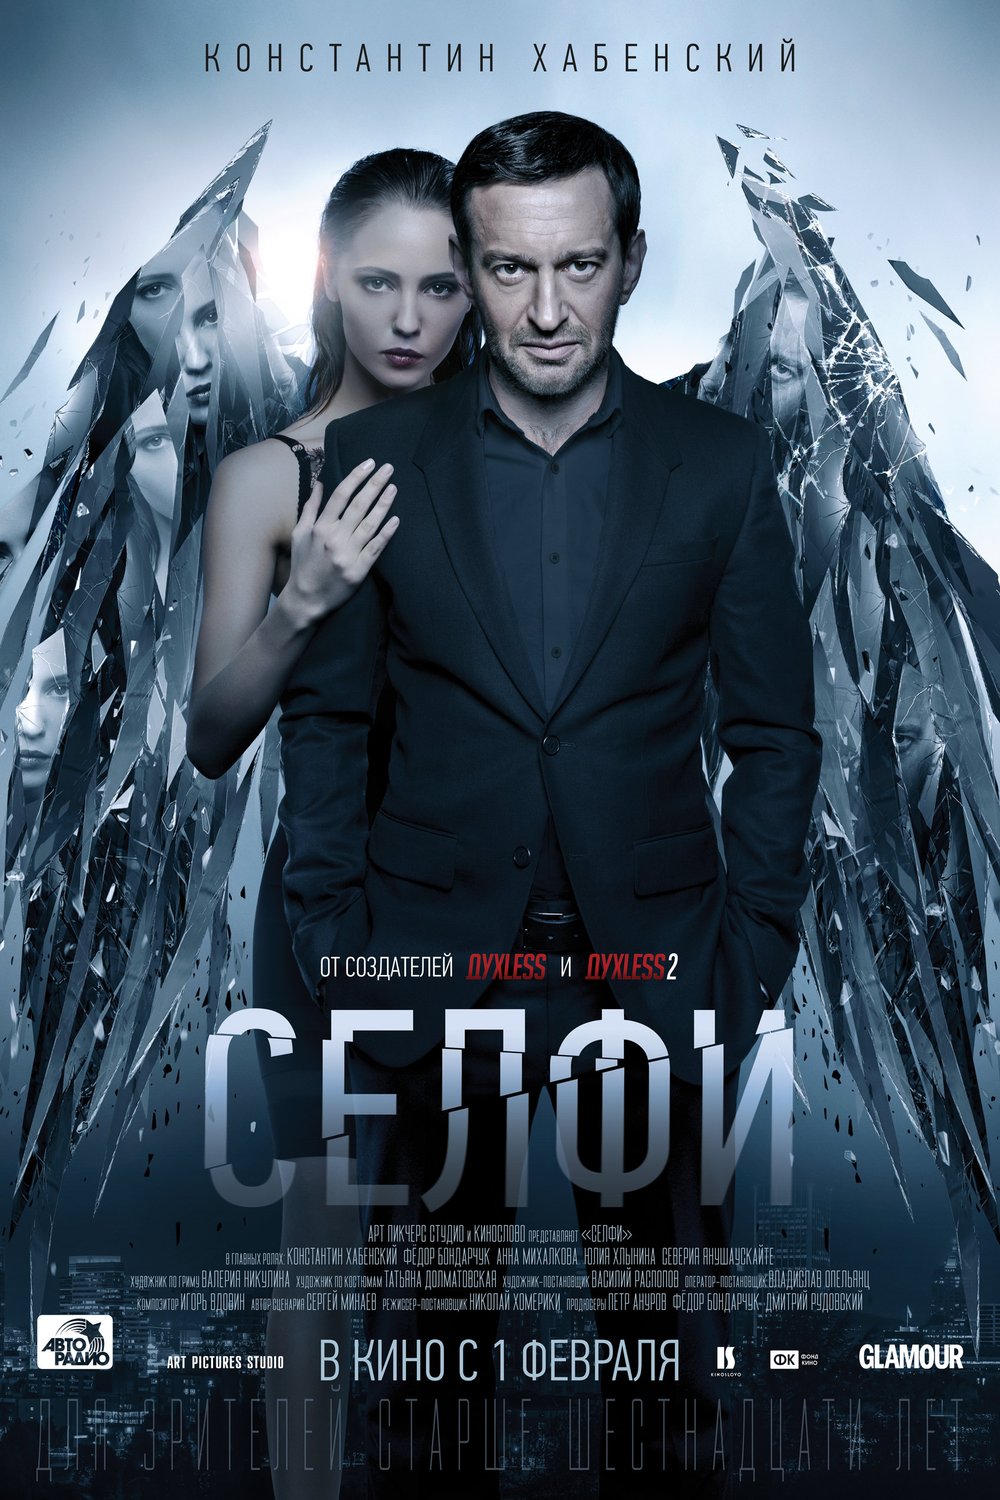 L'affiche originale du film Selfi en russe